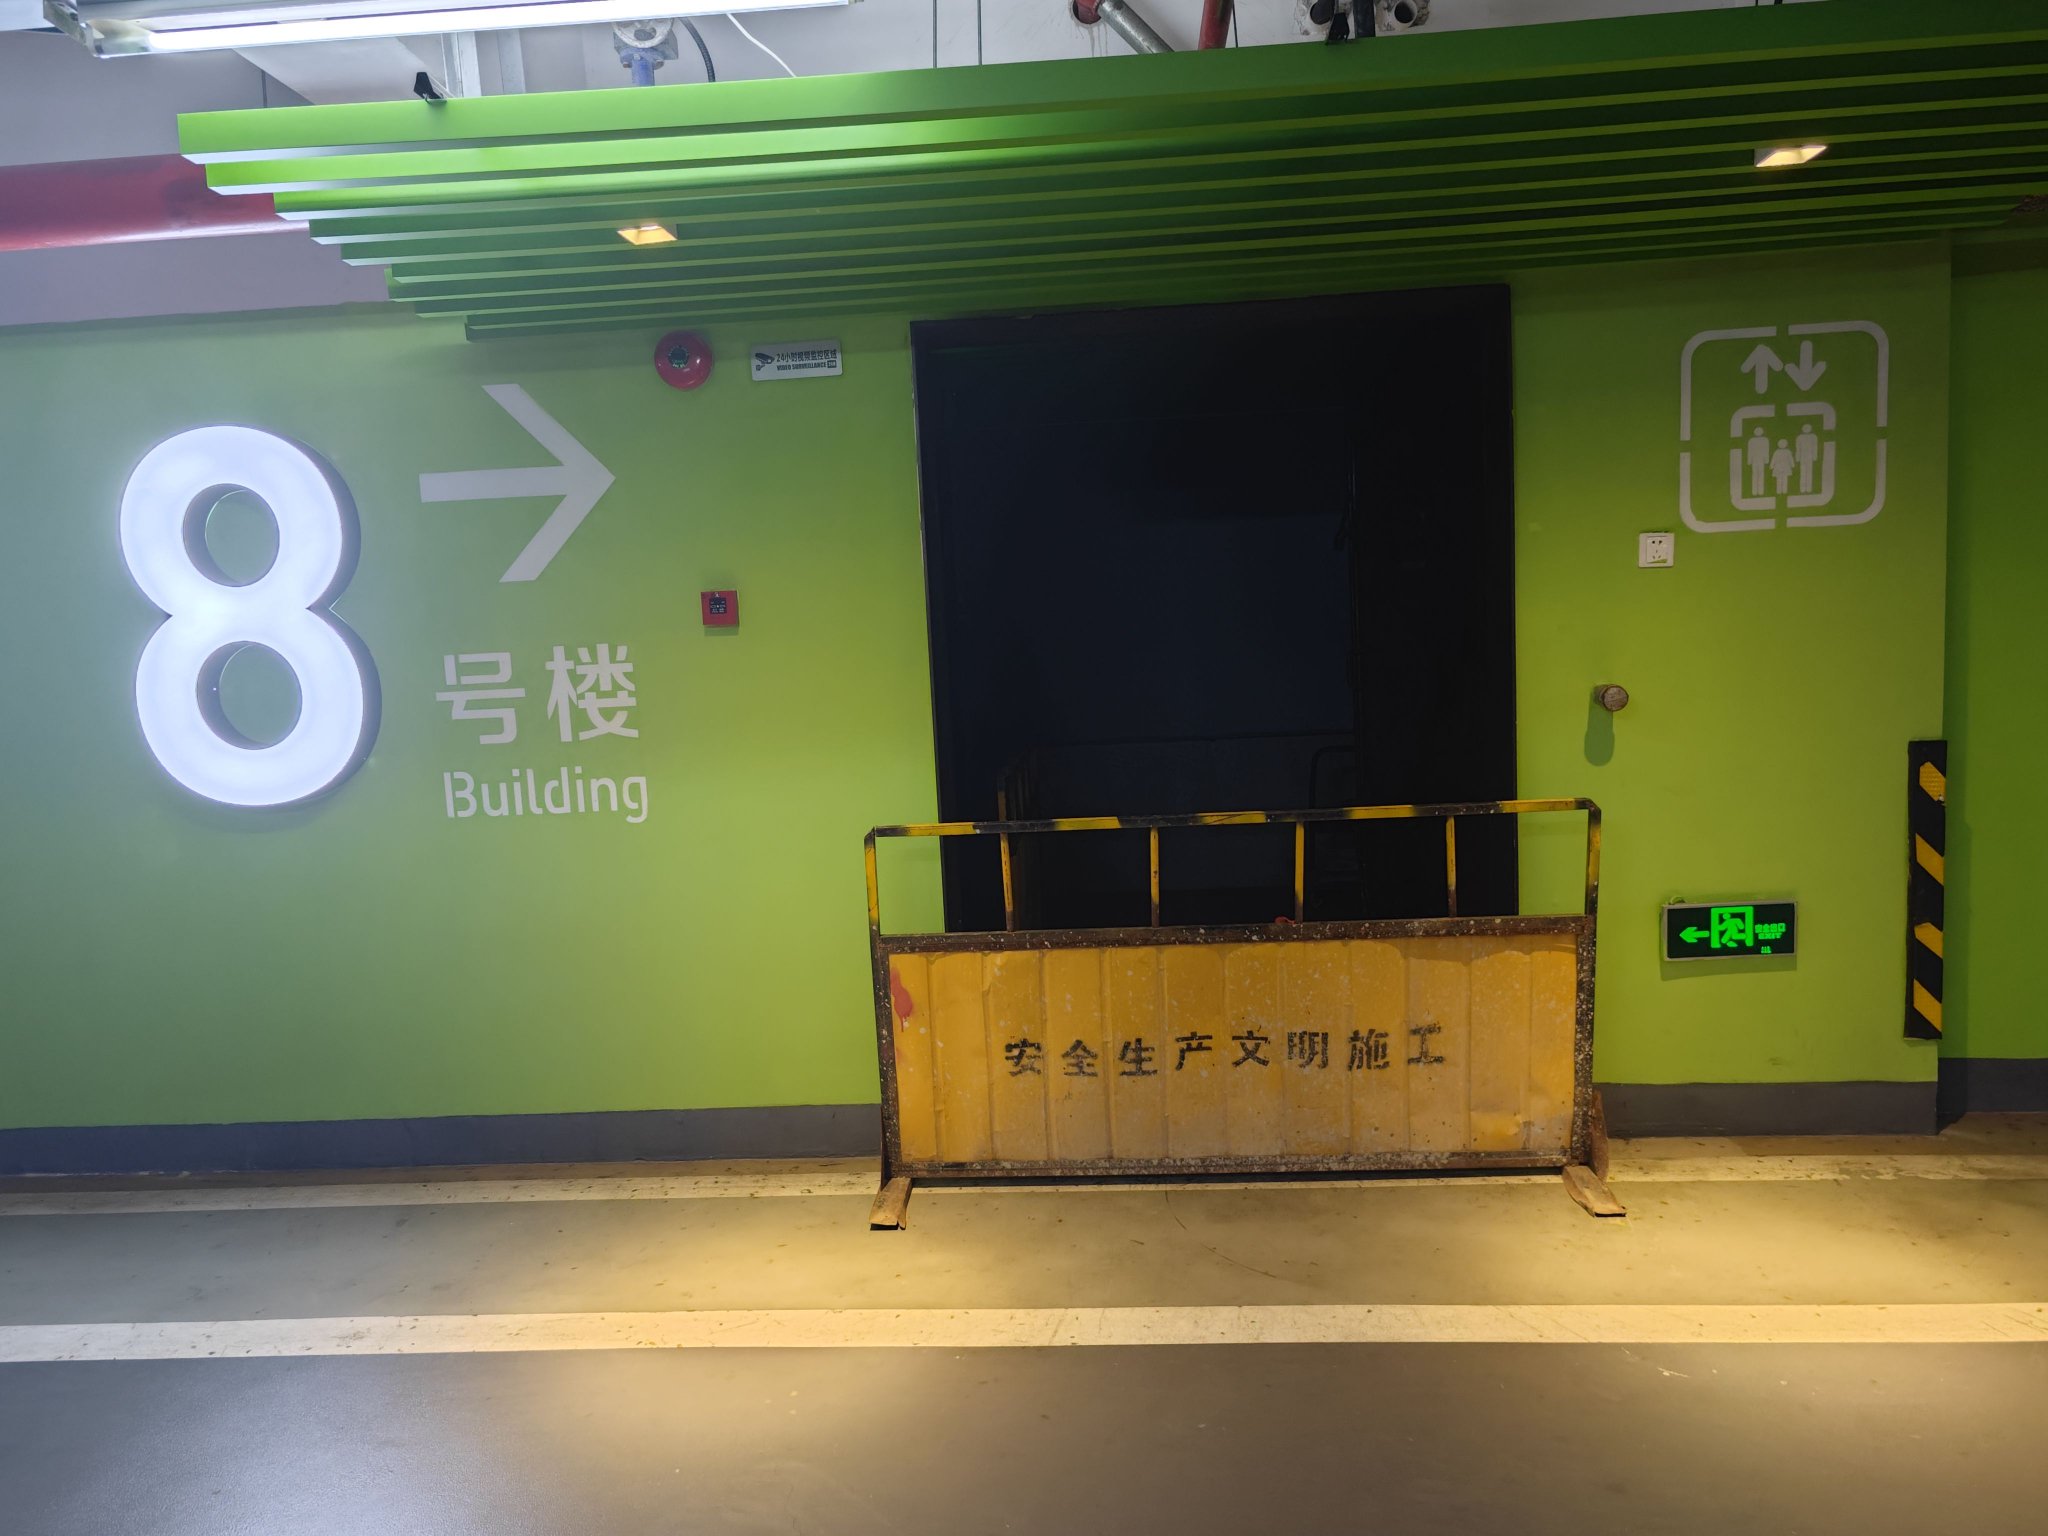 瑞丰达上海市浦东办公场所地下室进入该栋楼的通道已被暂时封闭。新京报记者俞金旻 摄